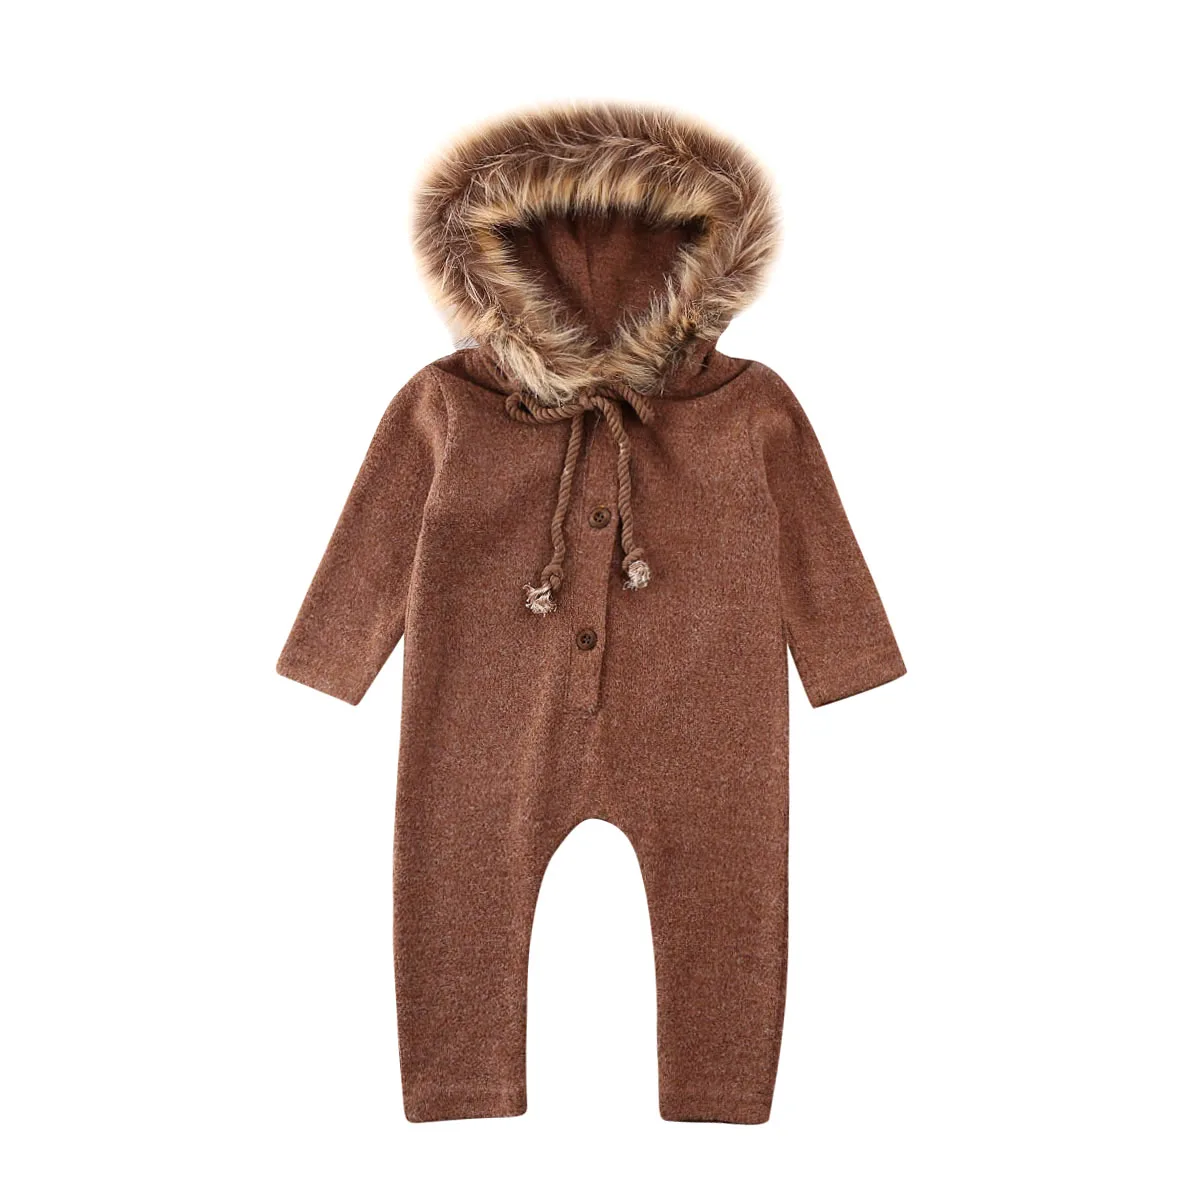 Зимняя одежда для новорожденных мальчиков и девочек, комбинезон с капюшоном, спортивный костюм, хлопковая одежда для малышей - Цвет: Коричневый